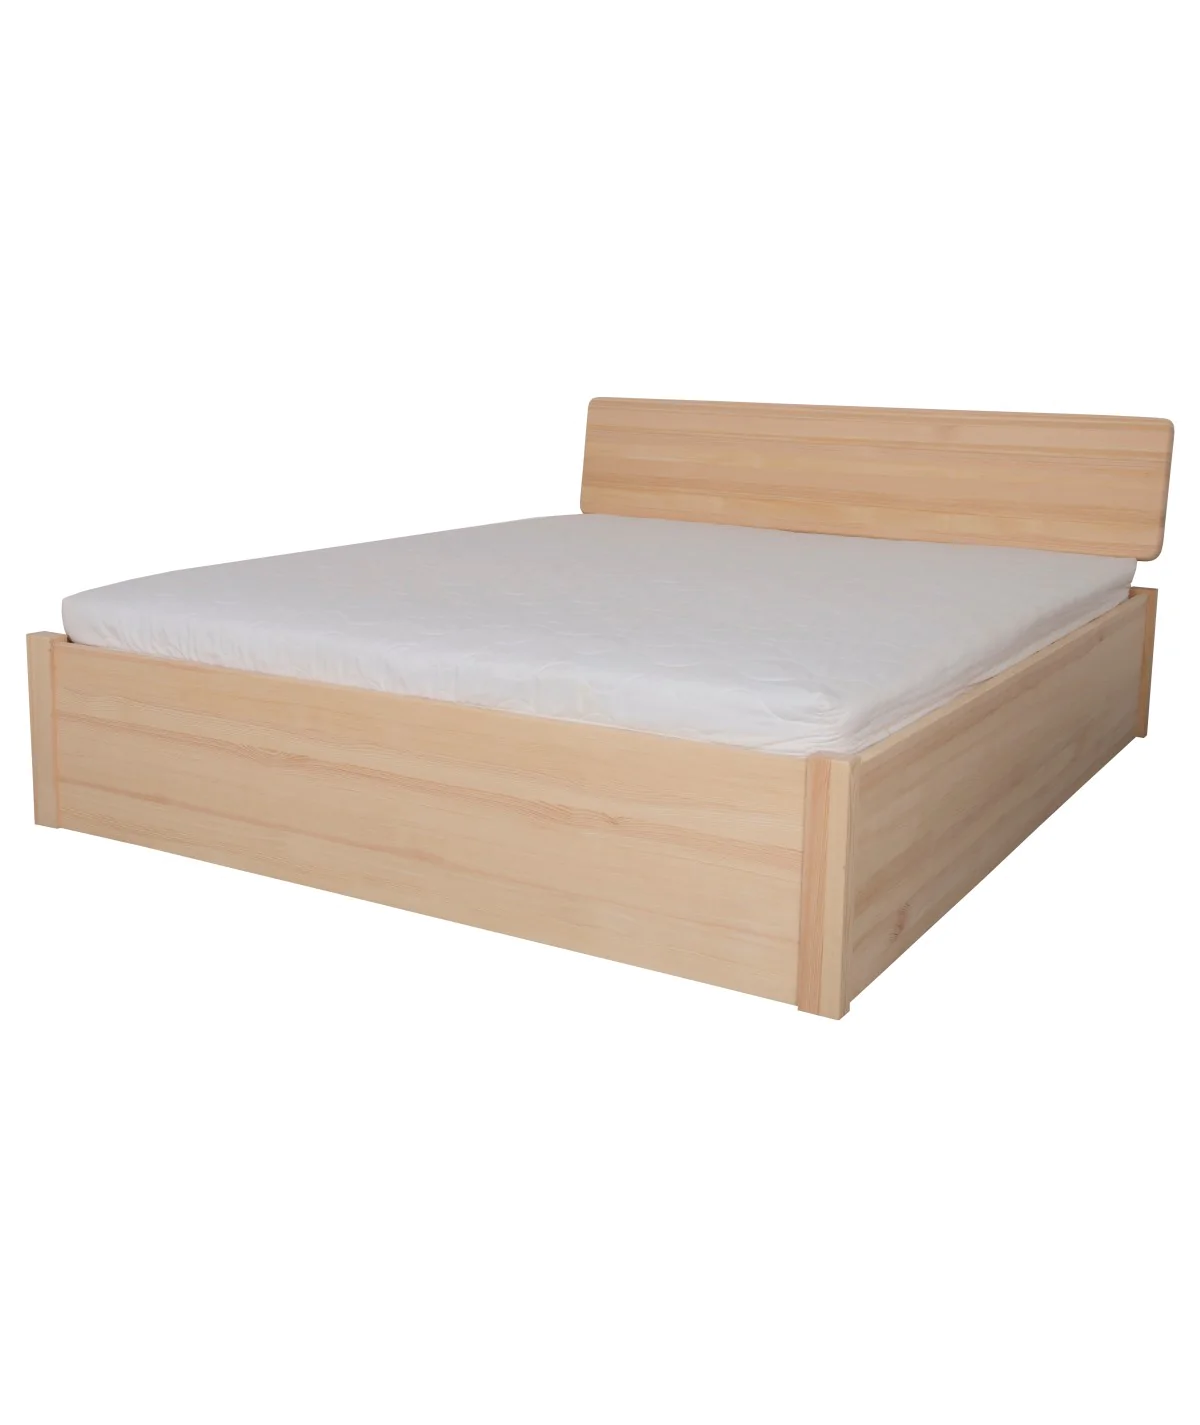 Łóżko brzozowe SODALIT 3 STOLMIS podnoszone na ramie drewnianej